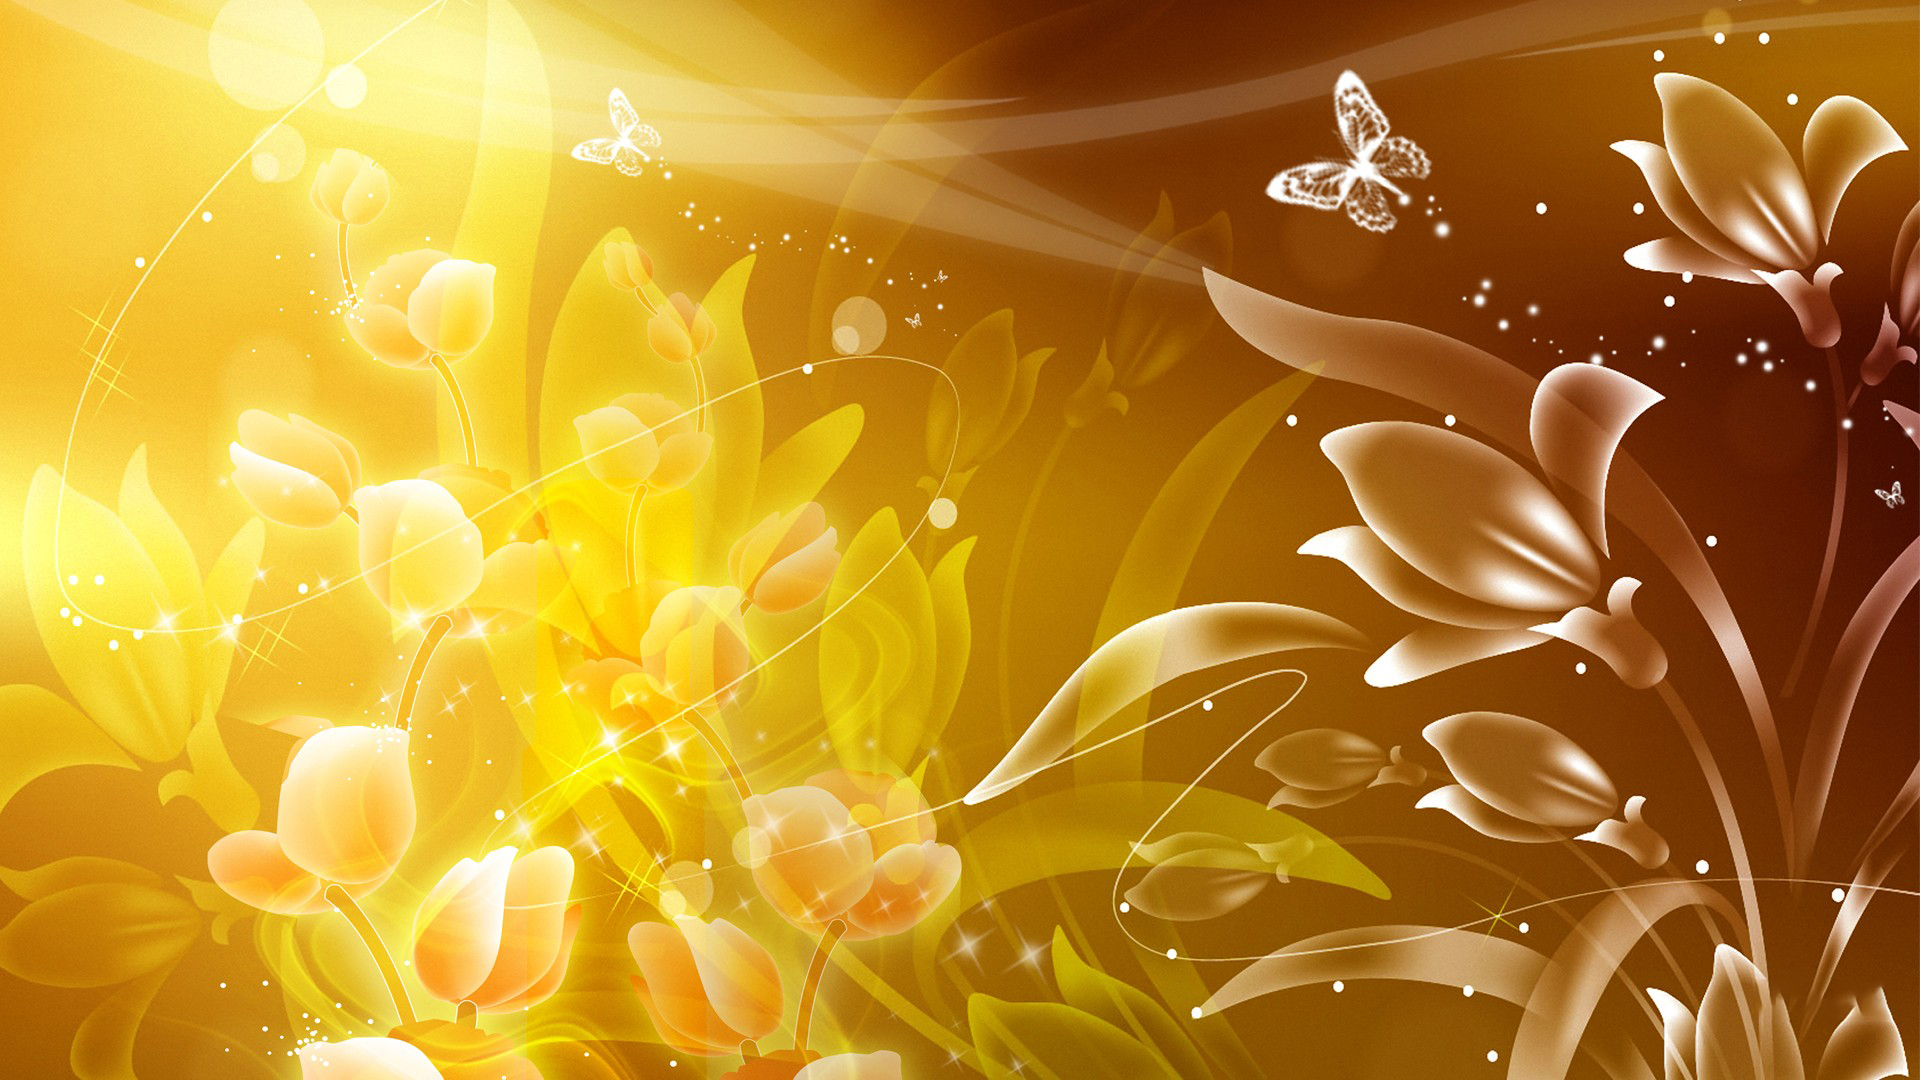 Hình Nền Quầng Sáng Nền Màu Vàng HD và Nền Cờ đẹp hạt flash nền nền vàng  để Tải Xuống Miễn Phí  Lovepik